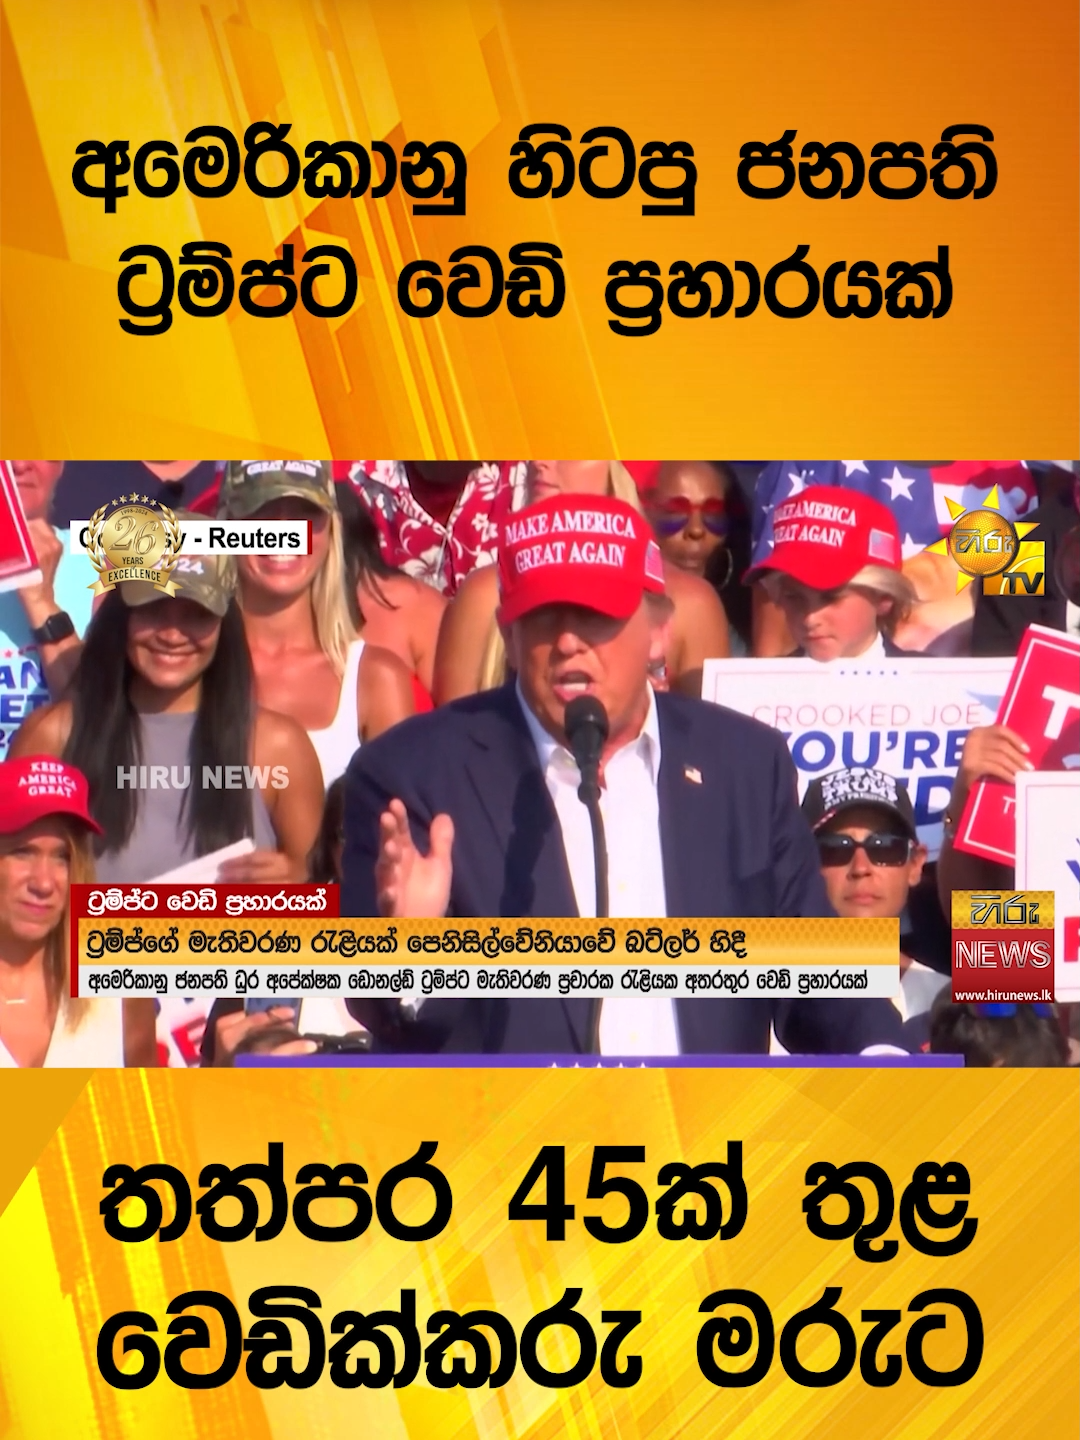 🔴 අමෙරිකානු හිටපු ජනපති ට්‍රම්ප්ට වෙඩි ප්‍රහාරයක් - තත්පර 45ක් තුළ වෙඩික්කරු මරුට - Hiru News #HiruMedia #2024 #LKA #Srilanka #TruthAtAllCosts #srilanka #news #Hirunewssinhala #TikTokTainment #WhatToWatch #longervideo #HiruNews #SriLankaNews #TrendingNews #DonaldTrump #Trump2024 #uspresident #Election2024 #RepublicanParty #USA #america  #donaldtrump #usa #pennsylvania